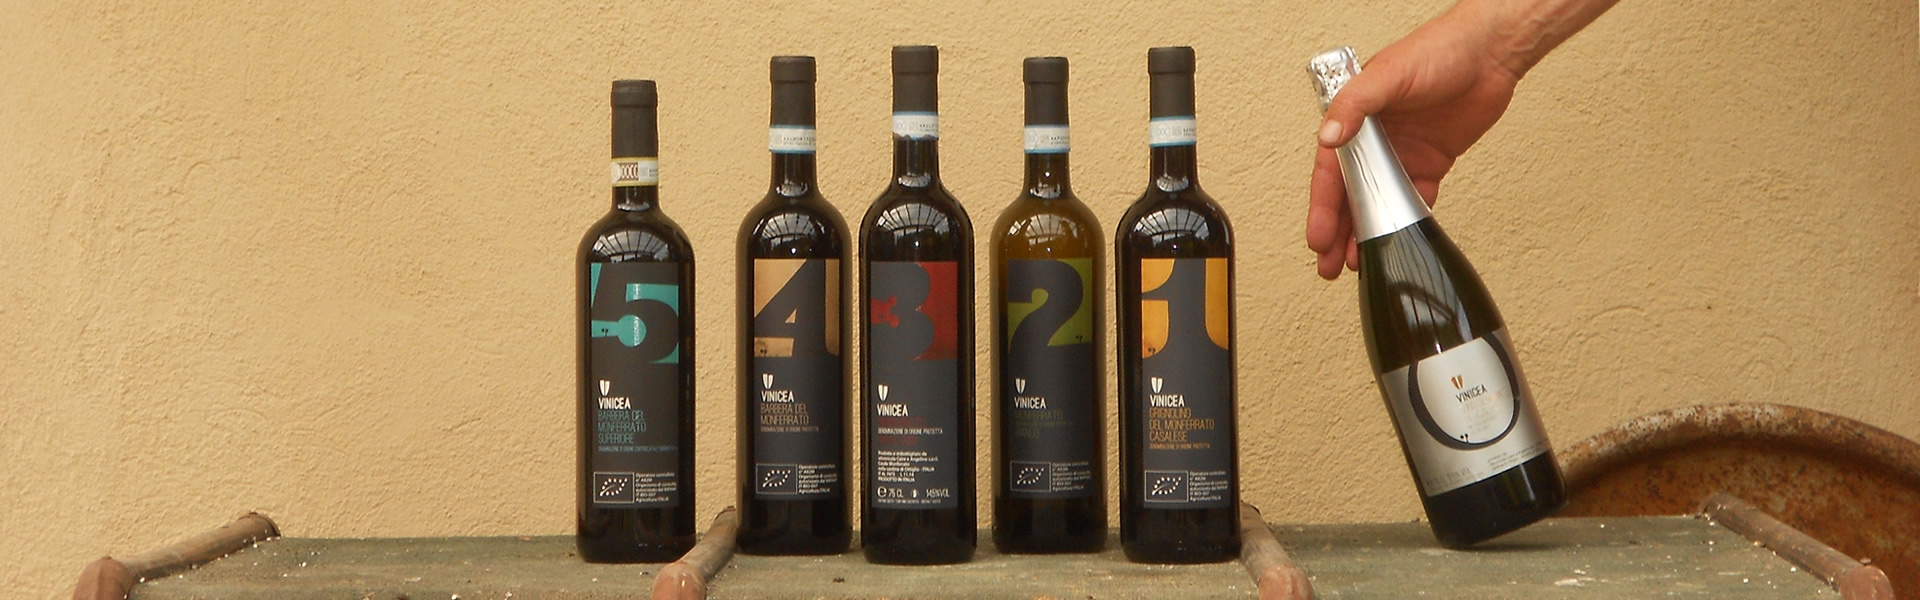 Produzione Vino - Casale Monferrato (AL)